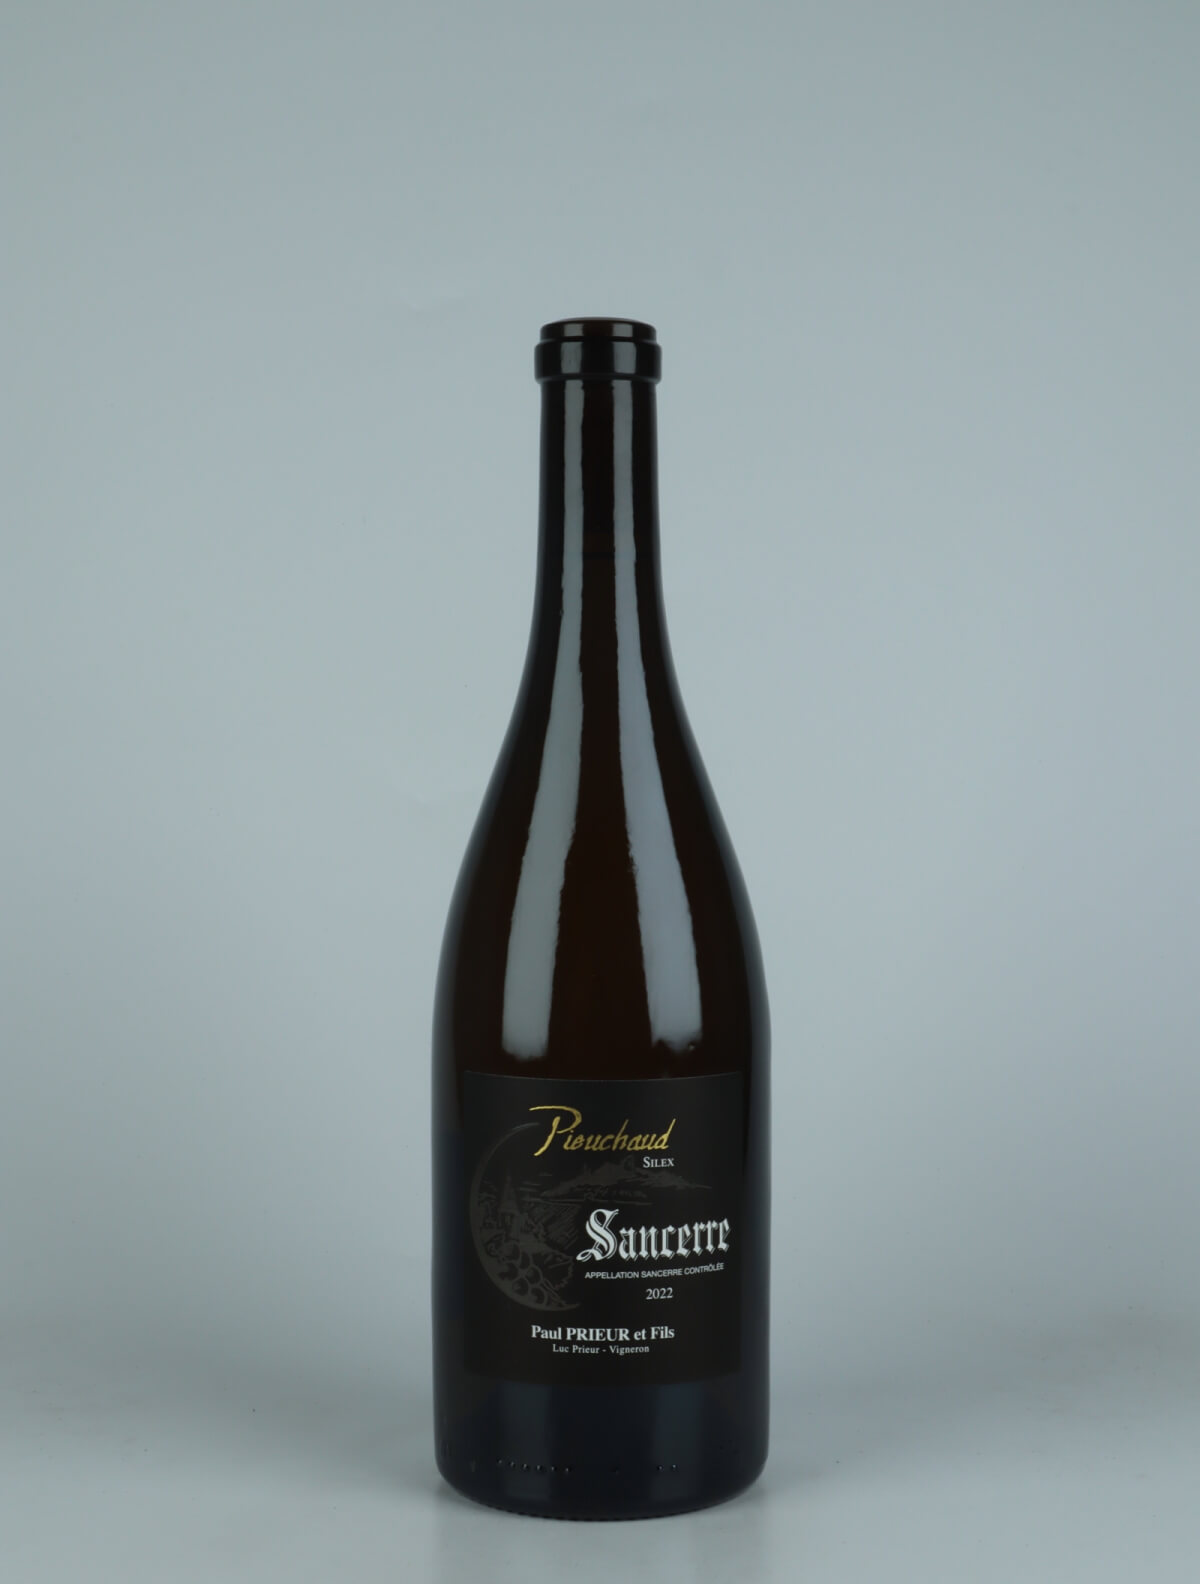 A bottle 2022 Sancerre - Pieuchaud Silex White wine from Paul Prieur et Fils, Loire in France